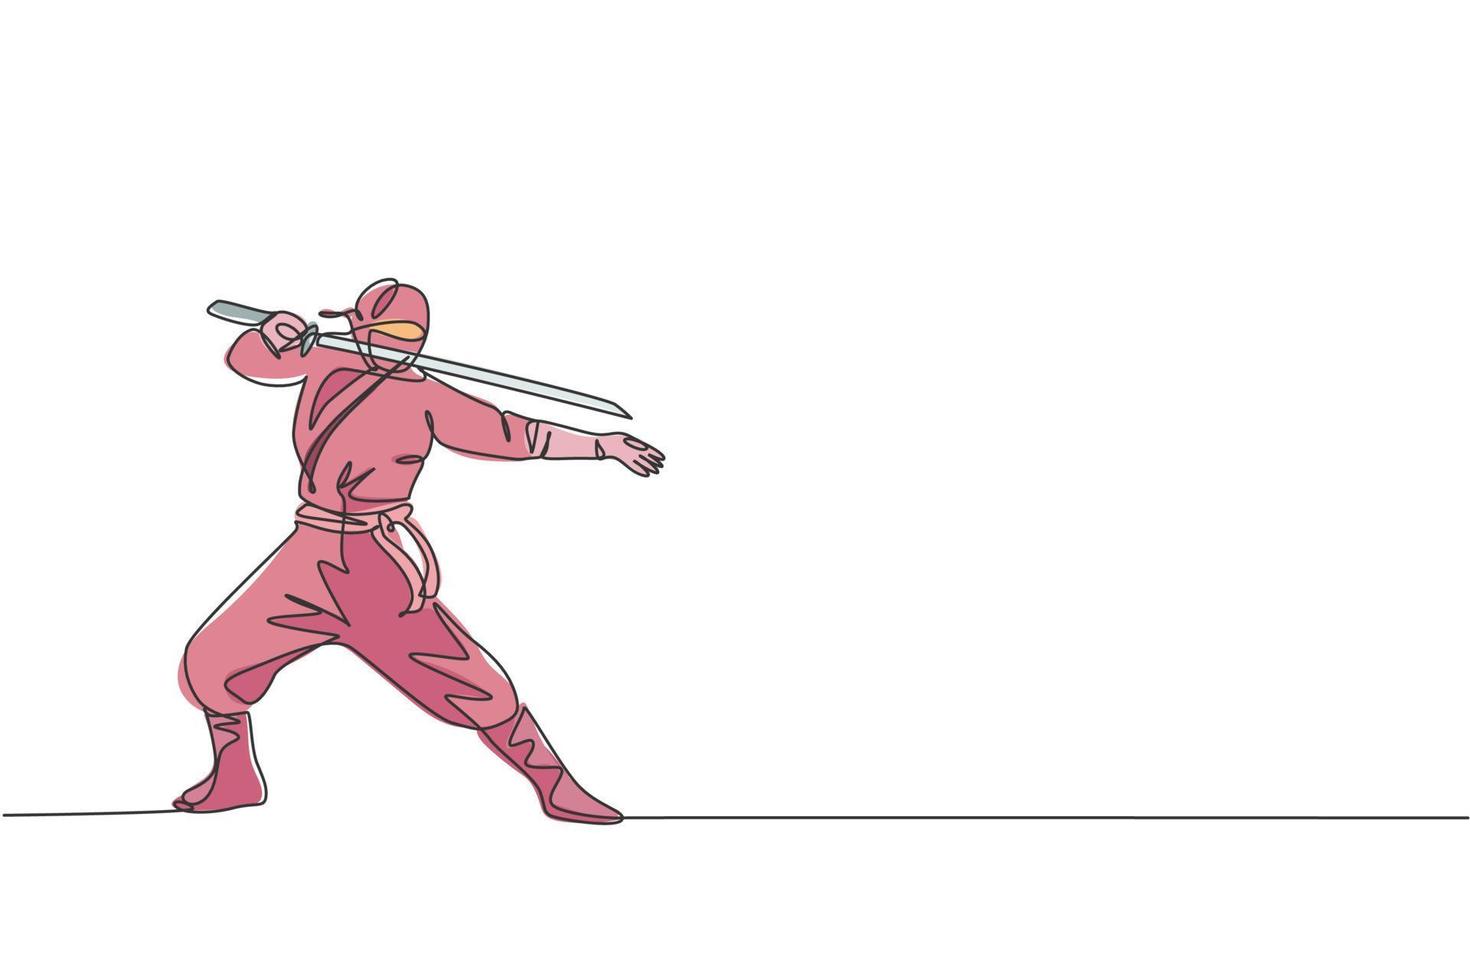 único desenho de linha contínua do jovem guerreiro ninja da cultura japonesa em traje de máscara com pose de postura de ataque. conceito de samurai de luta de arte marcial. ilustração em vetor design de desenho de uma linha na moda